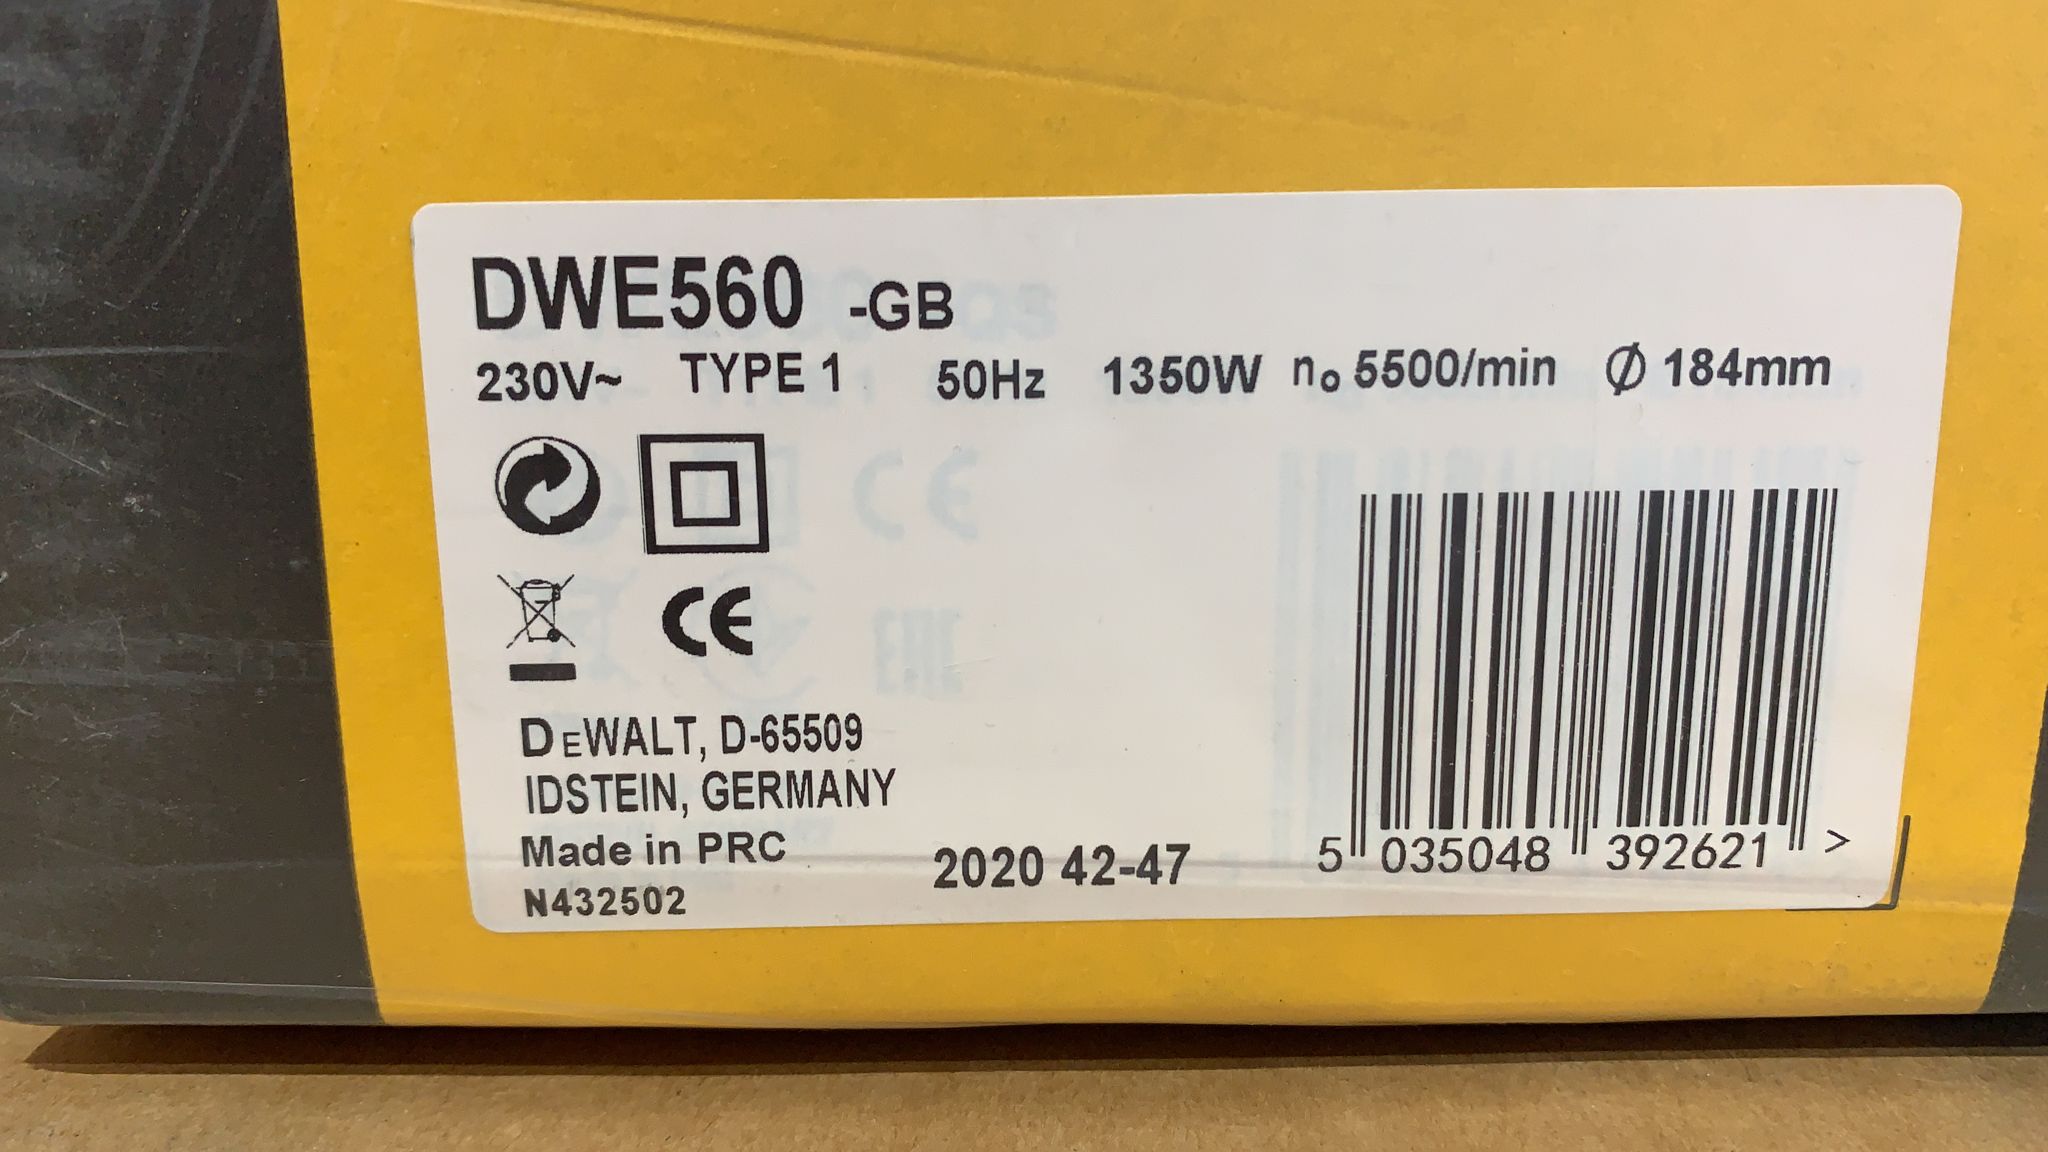 DeWalt 1350W 240V 184mm Corded Circular saw DWE560-GB